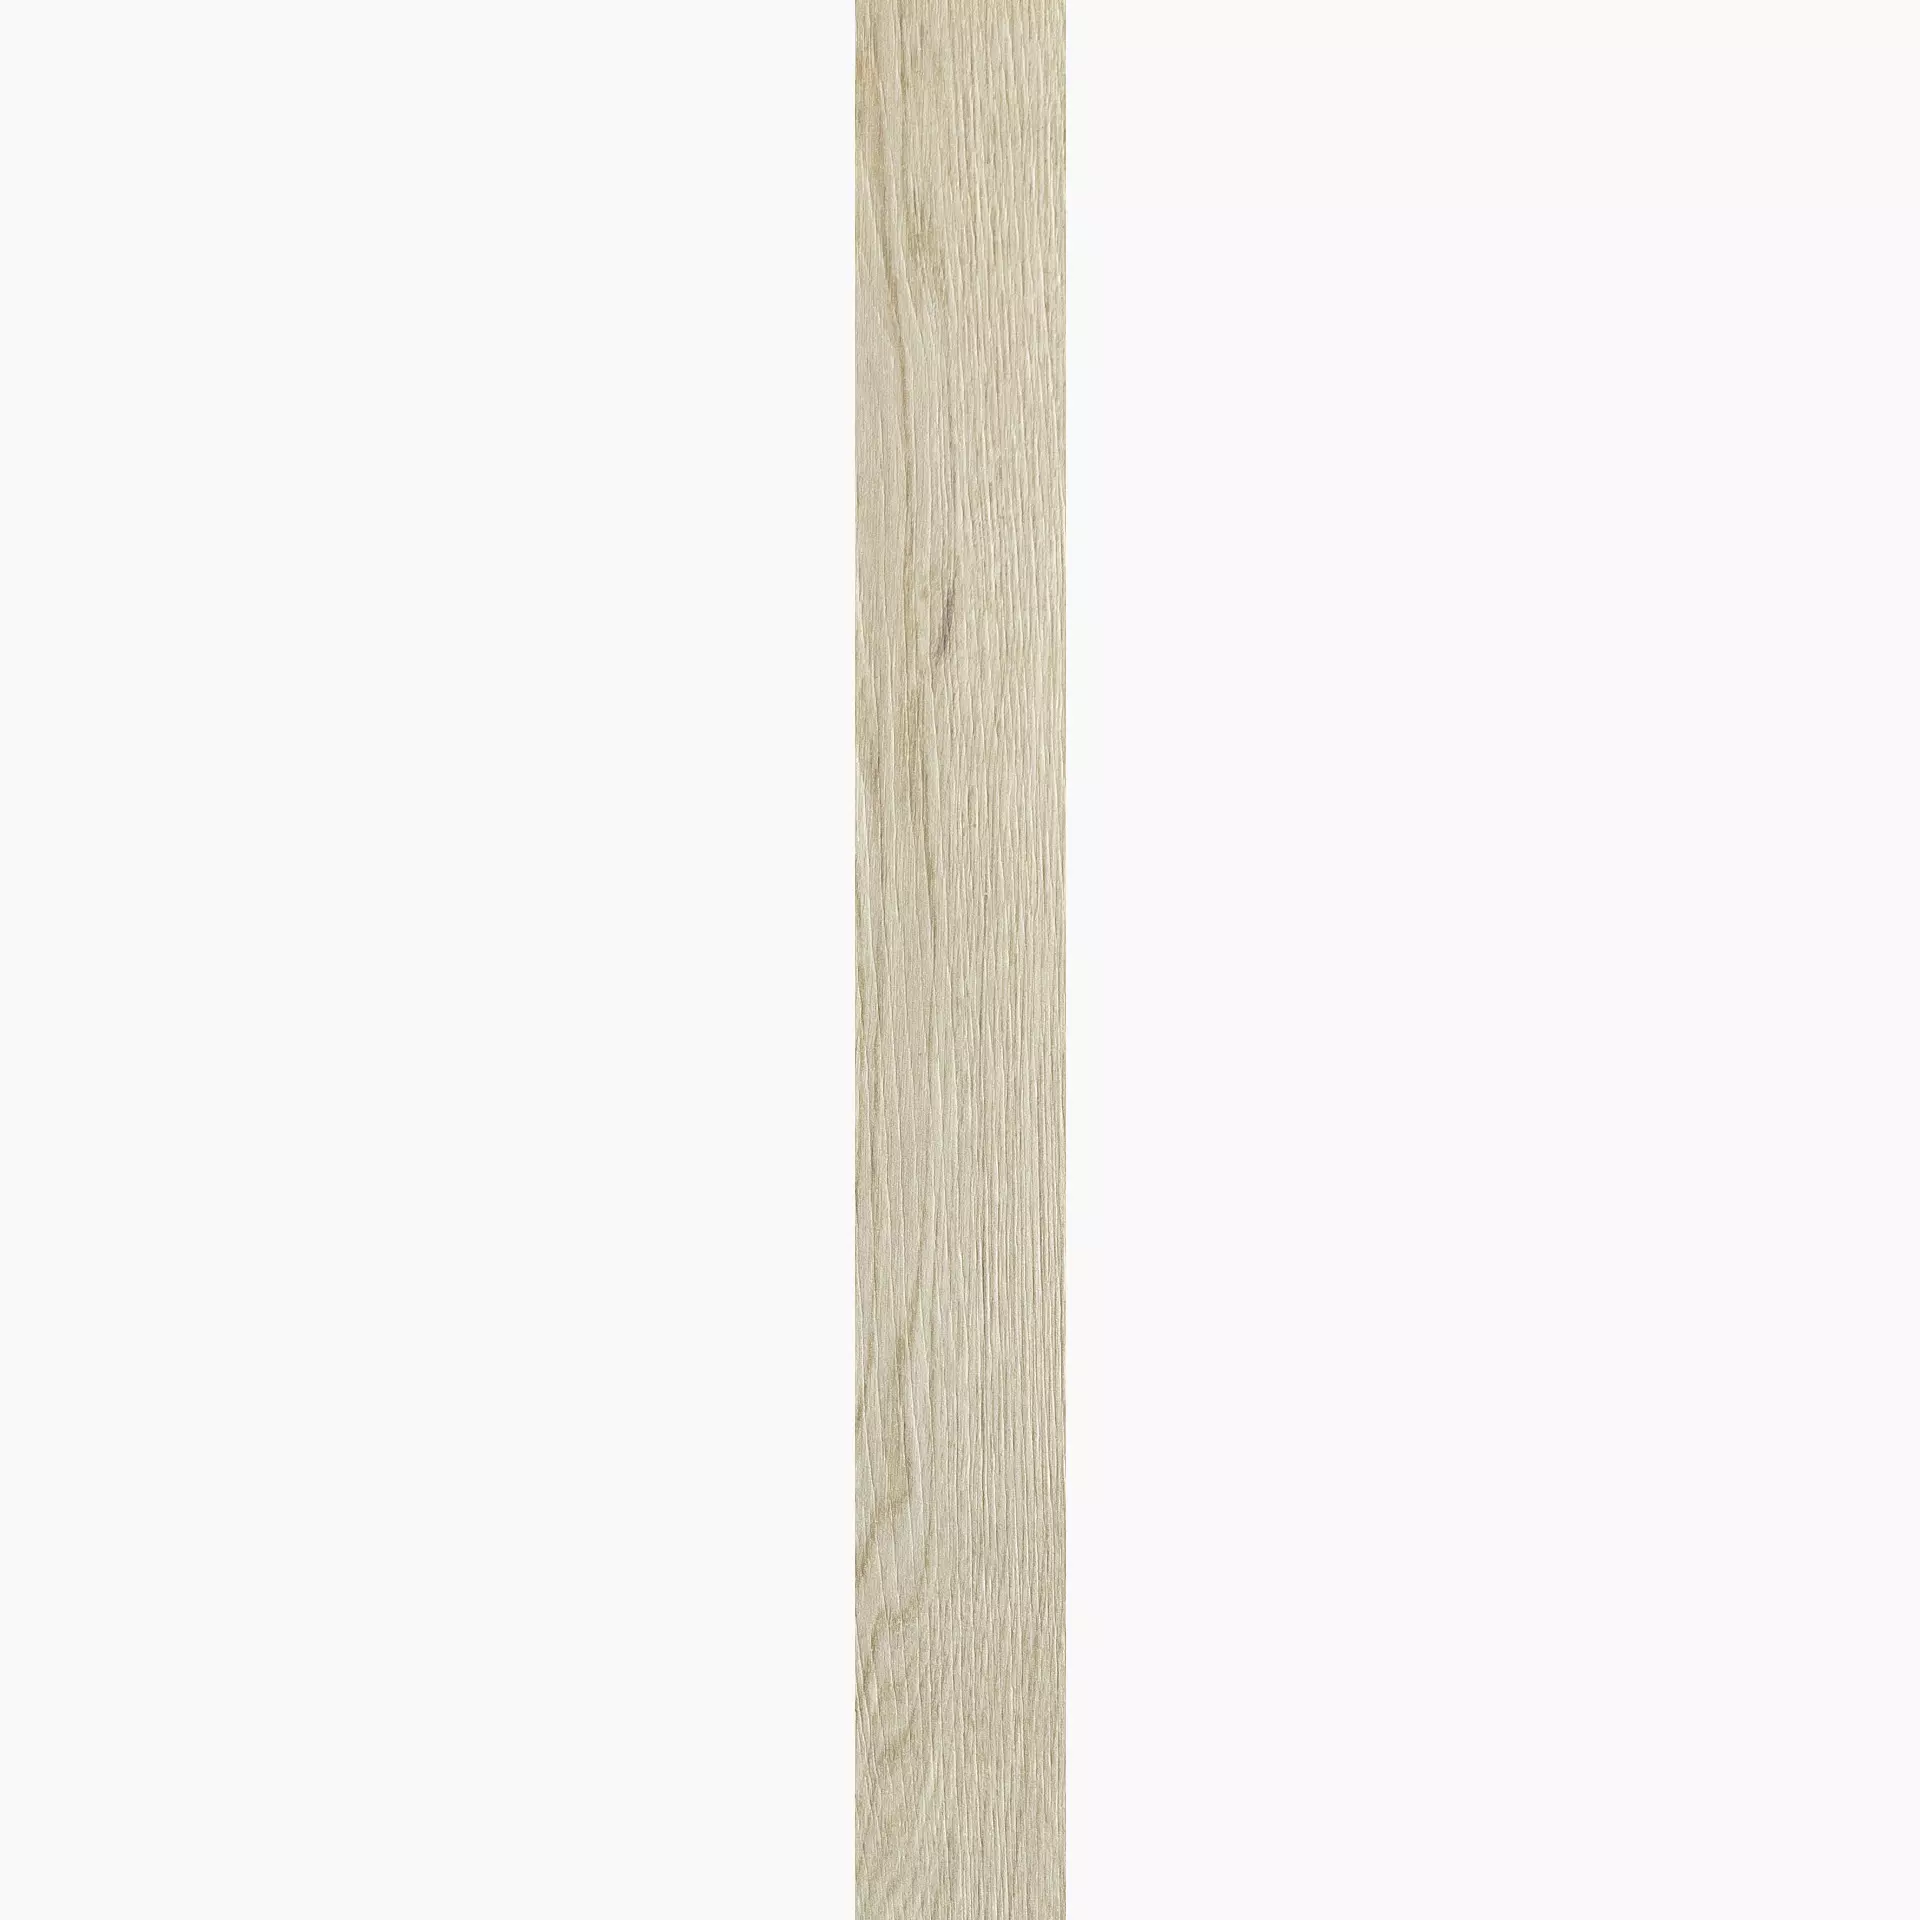 Florim Planches De Rex Amande Naturale – Matt Amande 755698 matt natur 20x180cm rektifiziert 9mm